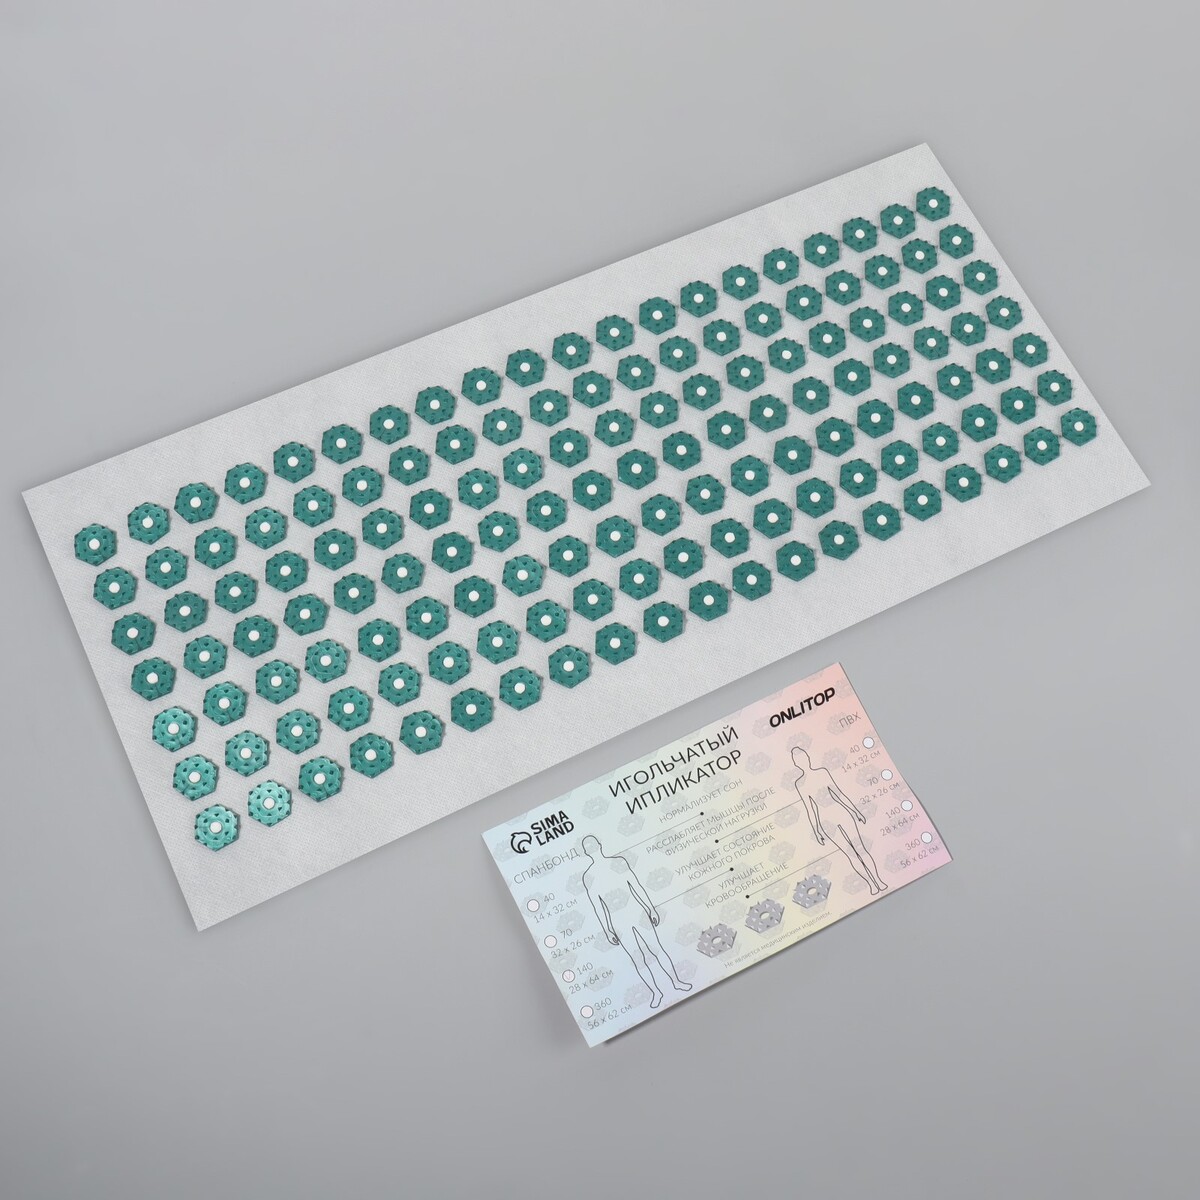 фото Ипликатор - коврик, основа спанбонд, 140 модулей, 28 × 64 см, цвет белый/зеленый onlitop